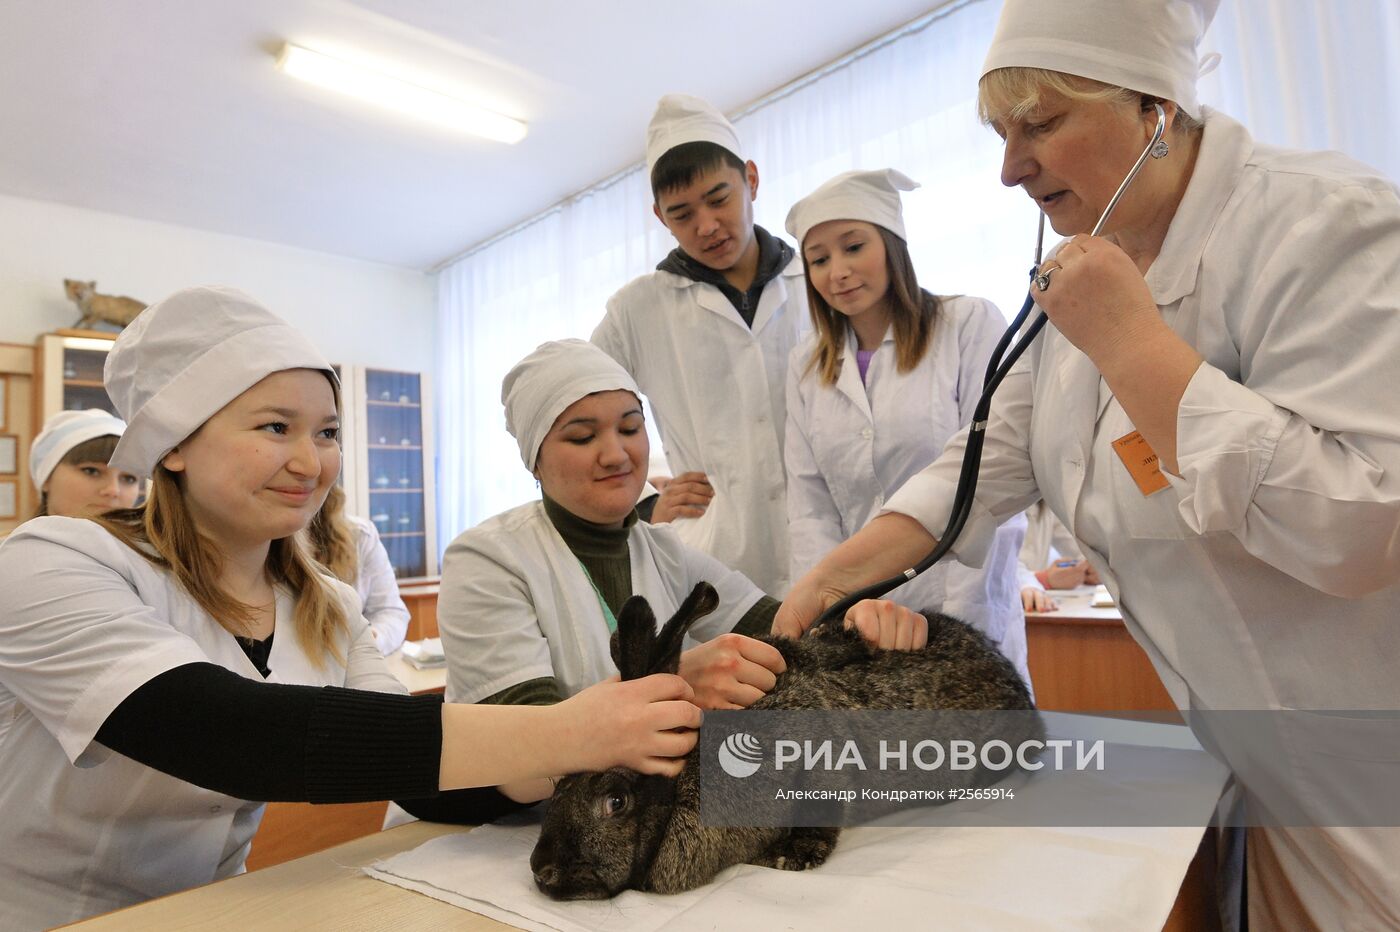 Уральская государственная академия ветеринарной медицины